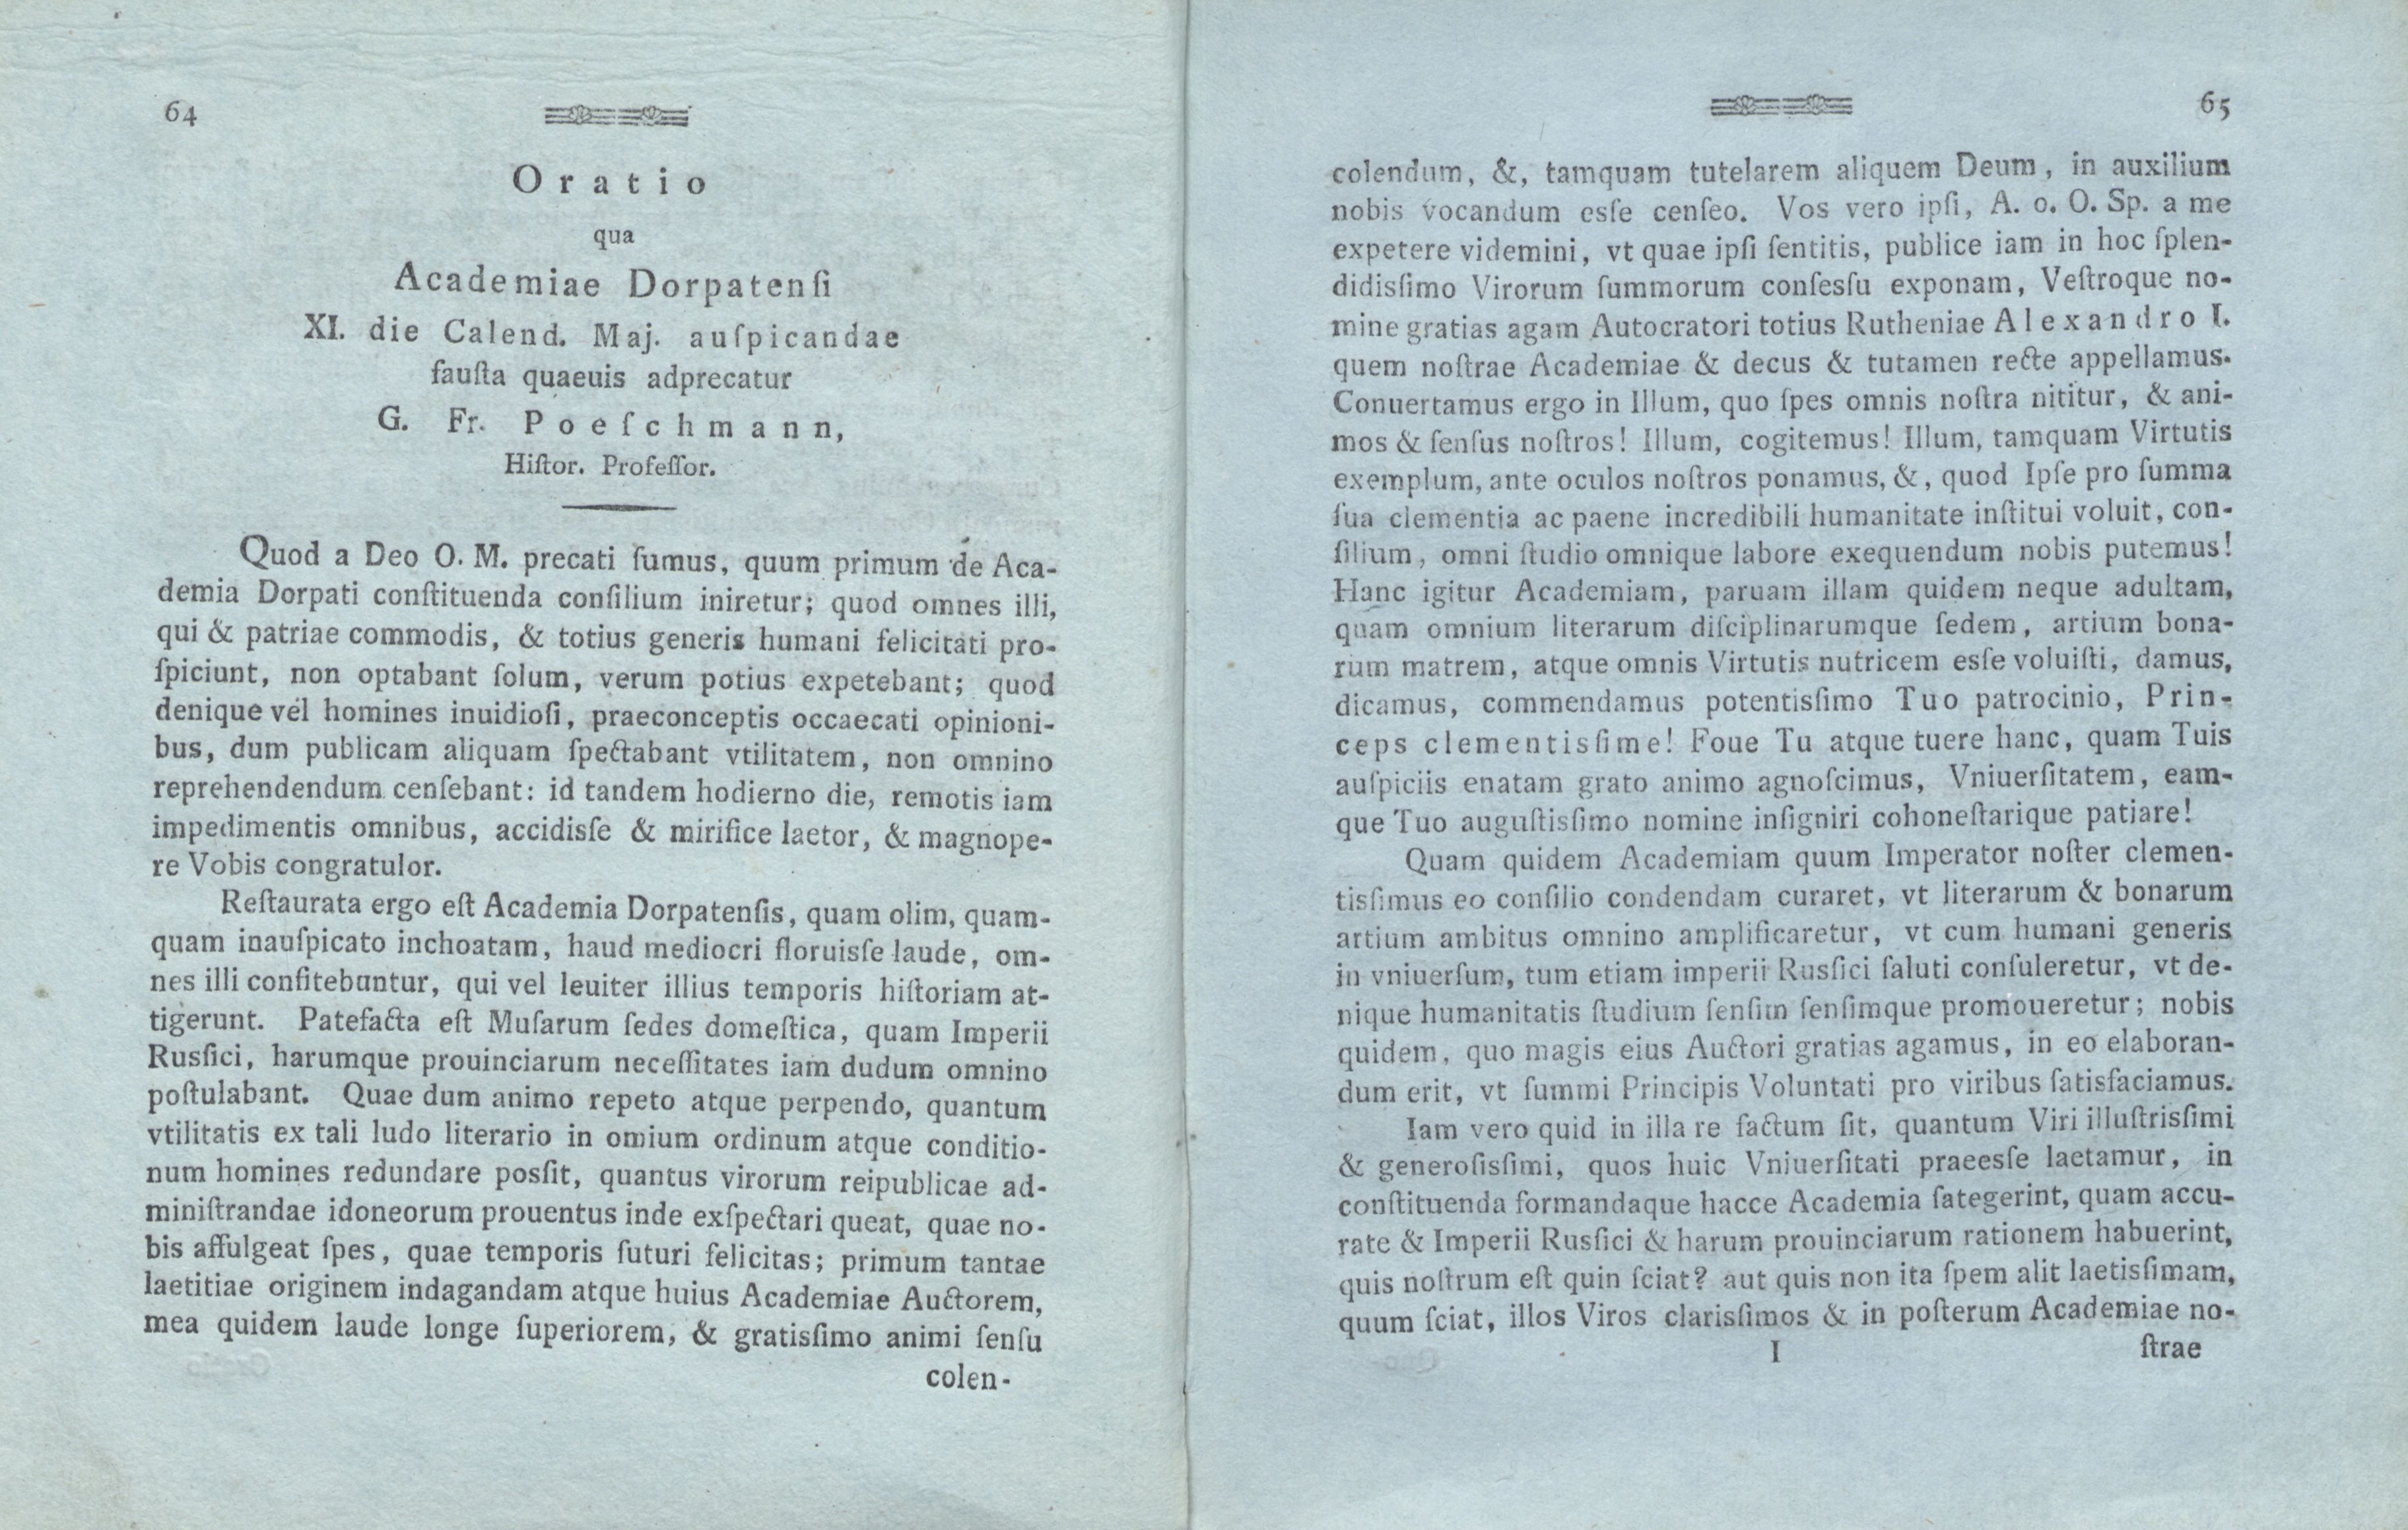 Oratio qua Academiae Dorpatensi (1802) | 1. (64-65) Основной текст